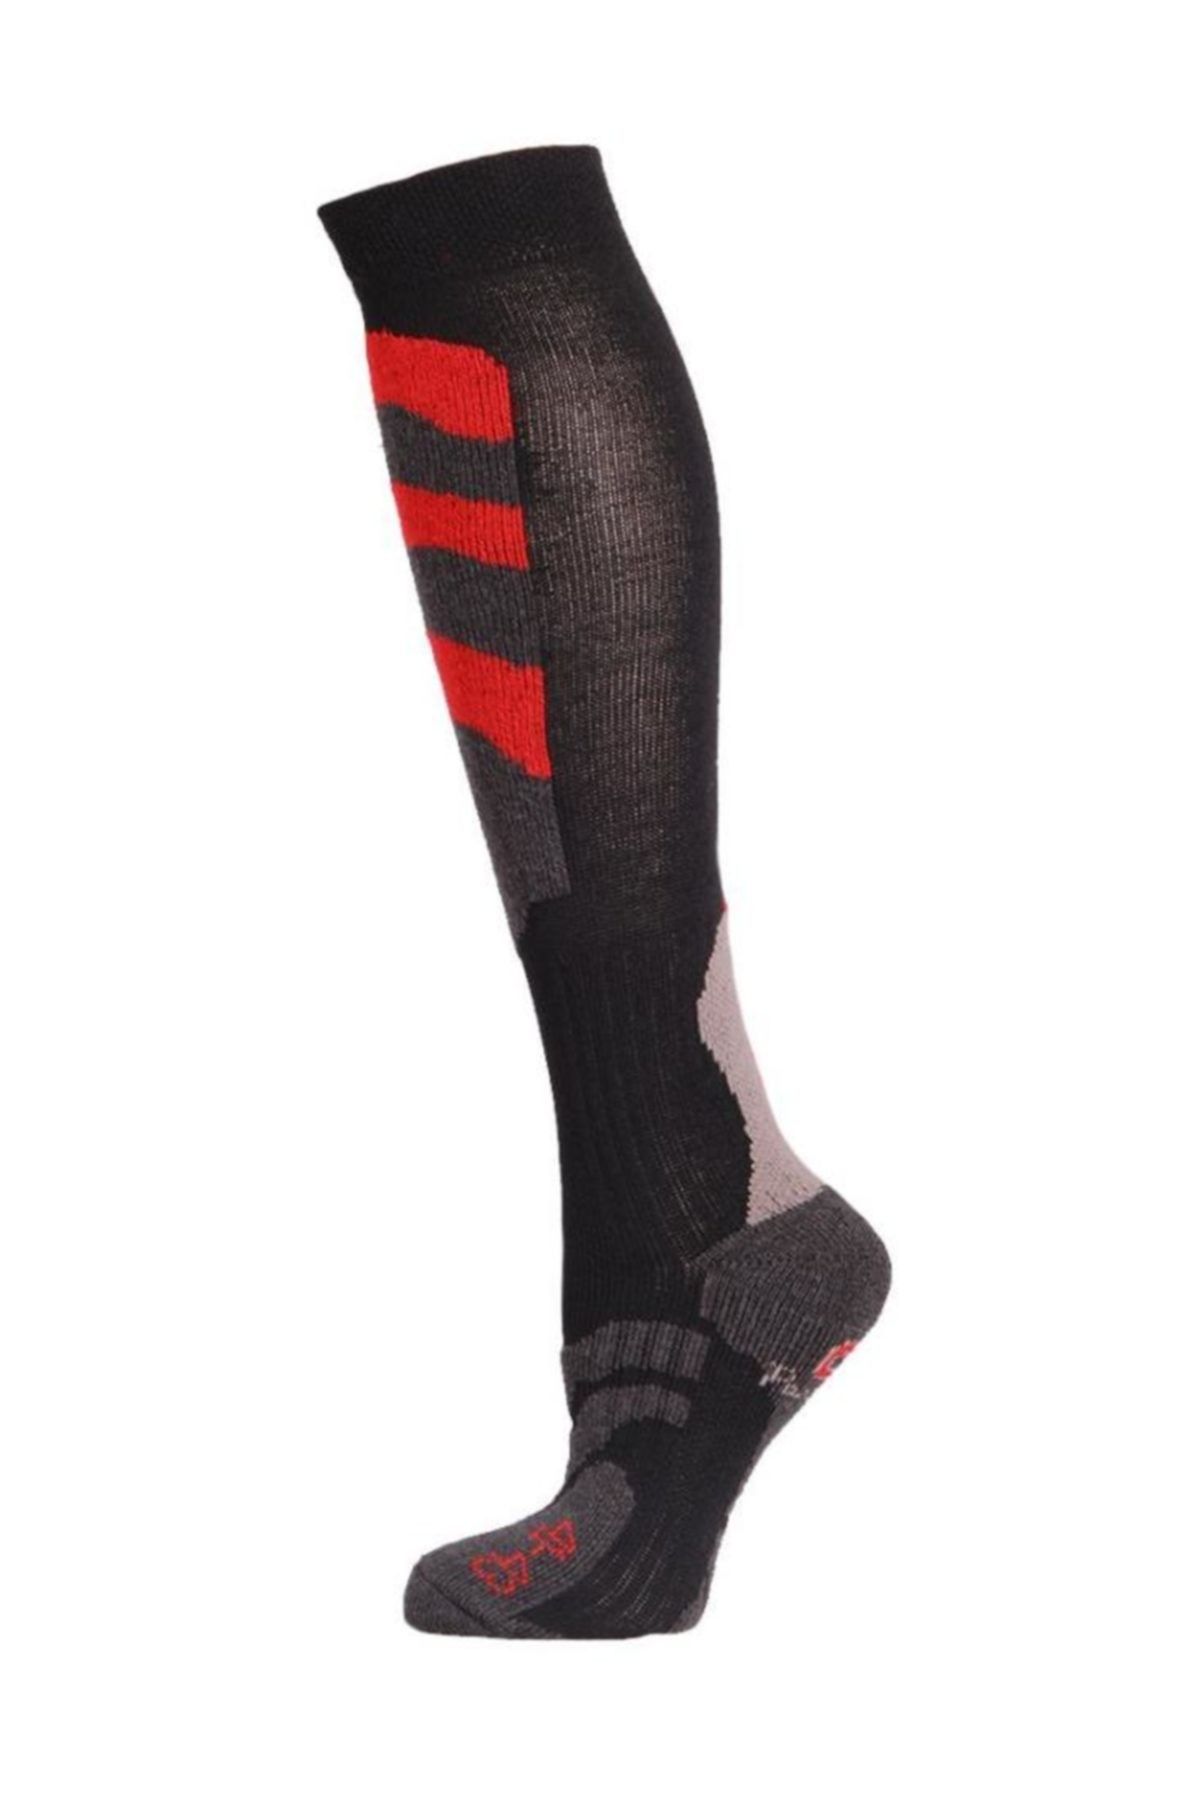 Panthzer Ski Erkek Kayak Çorabı Siyah/Antrasit